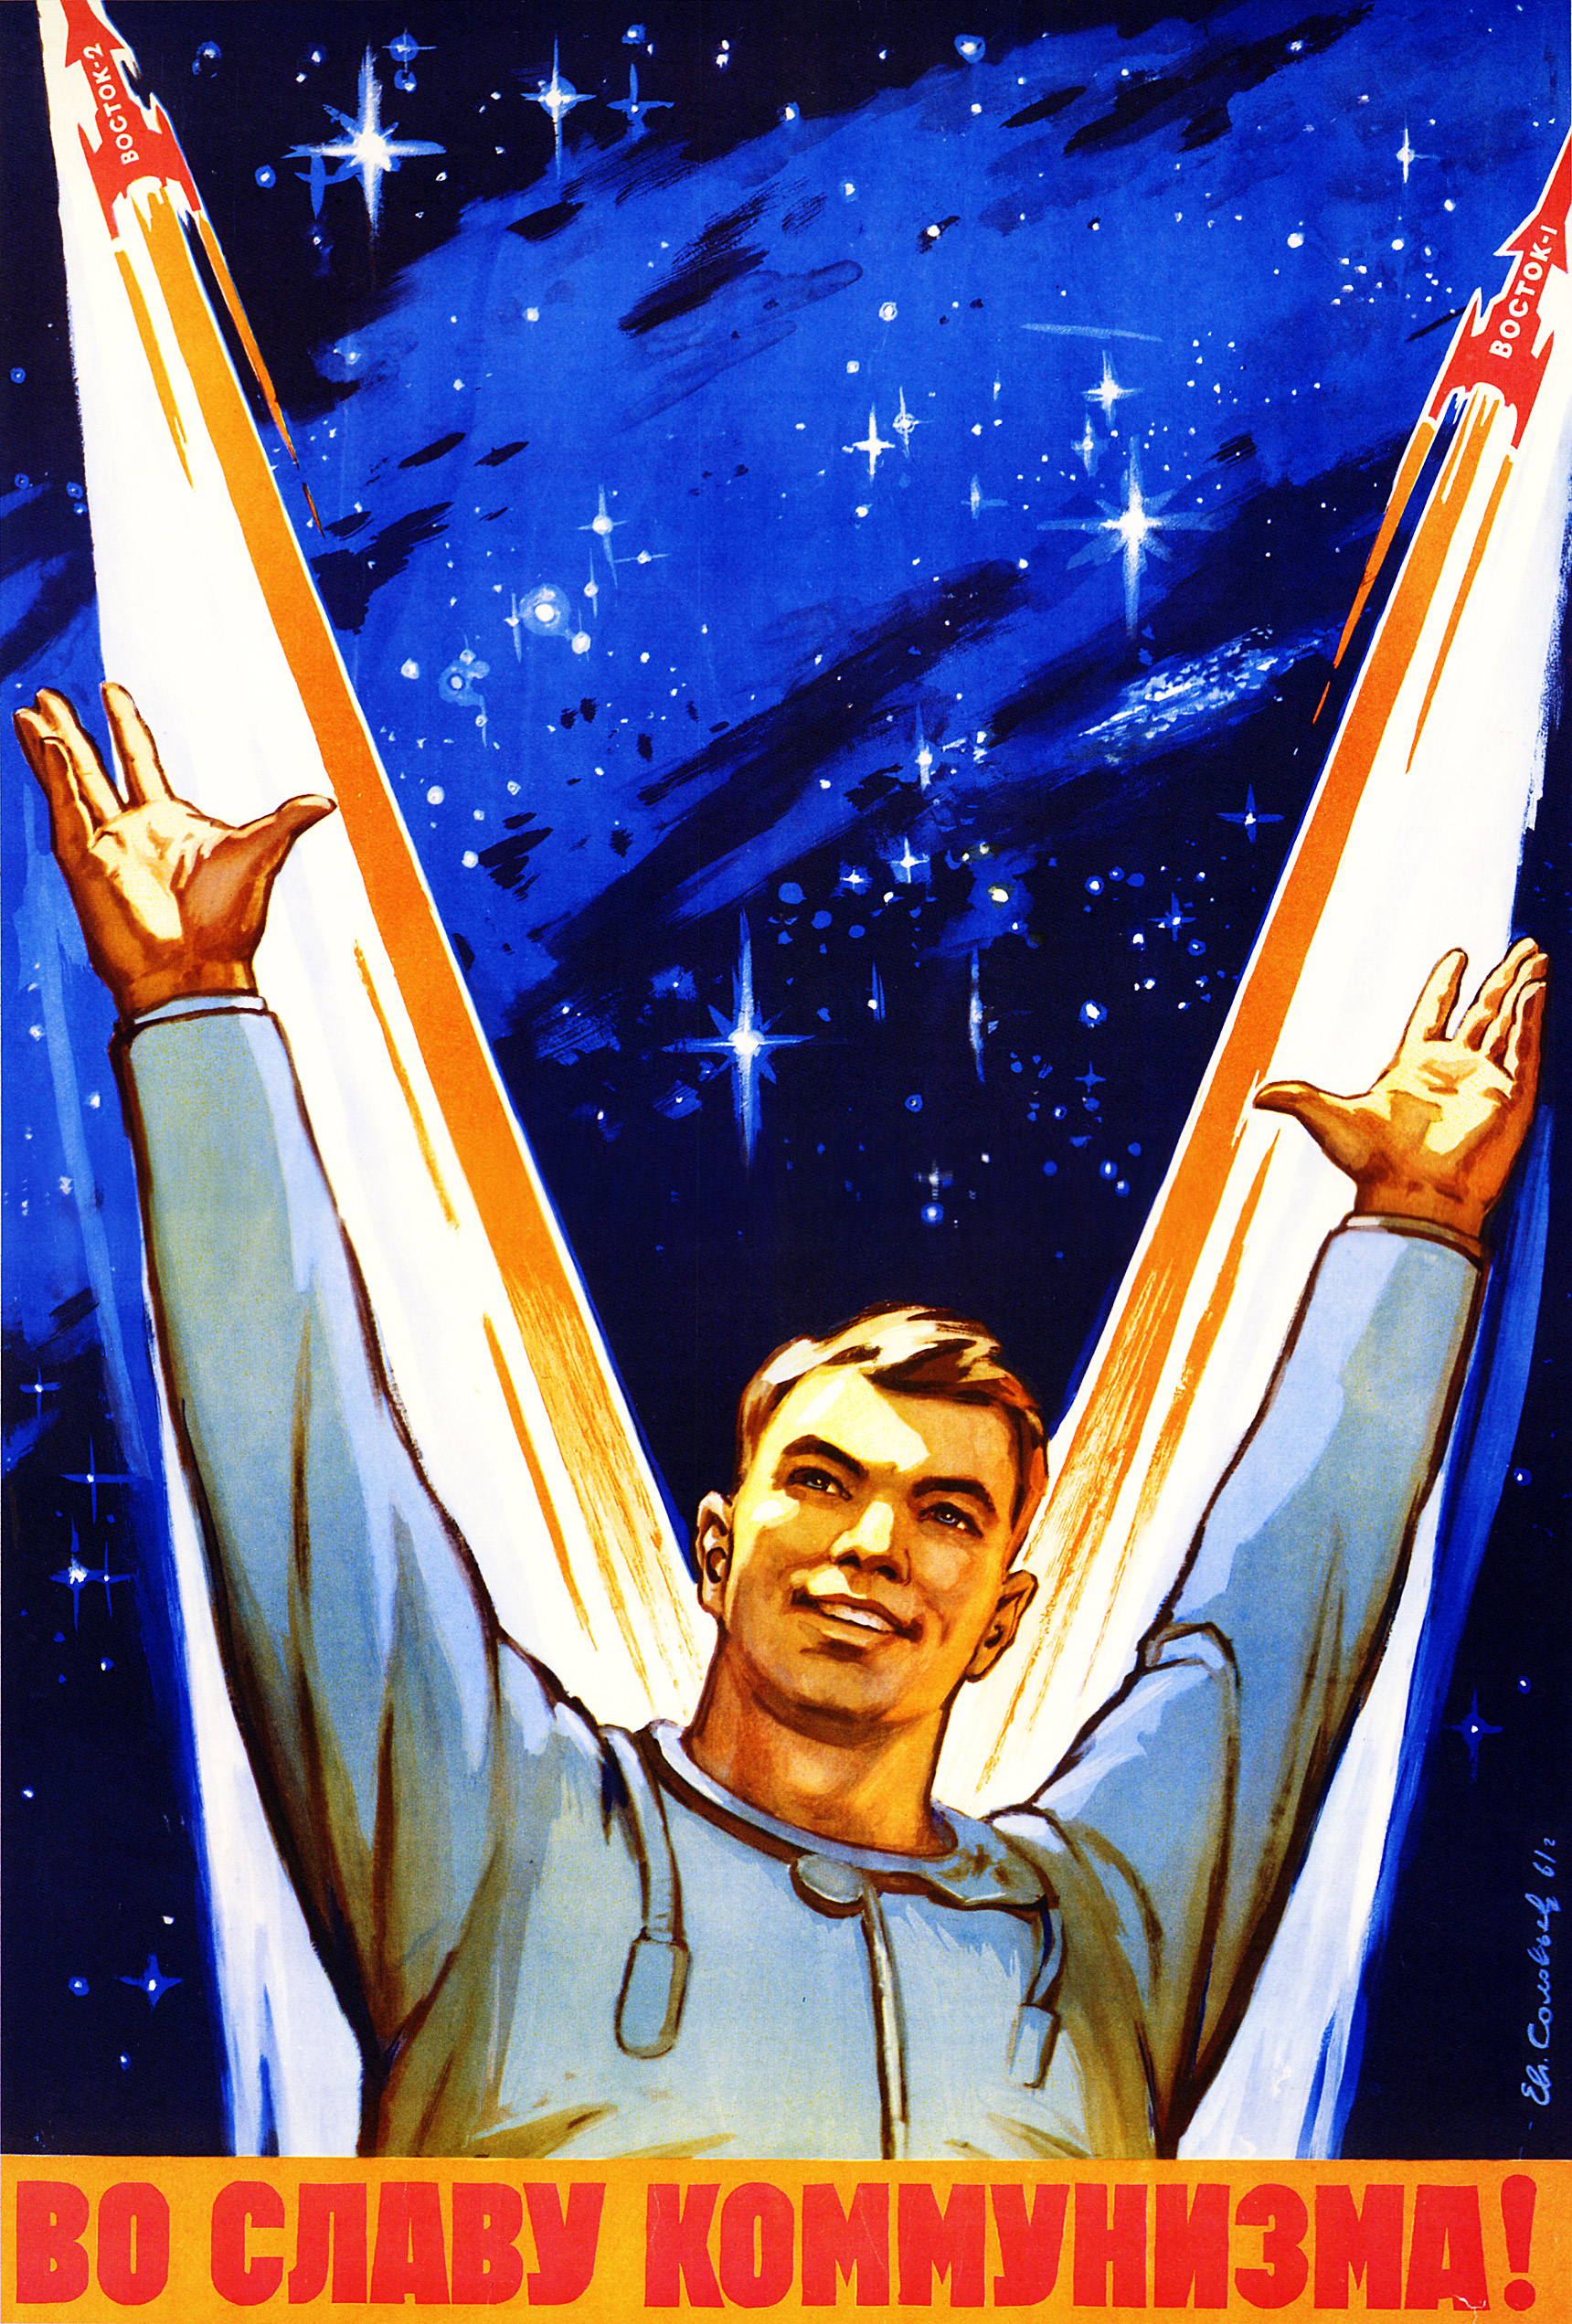 soviet-space-program-propaganda-poster-22.jpg